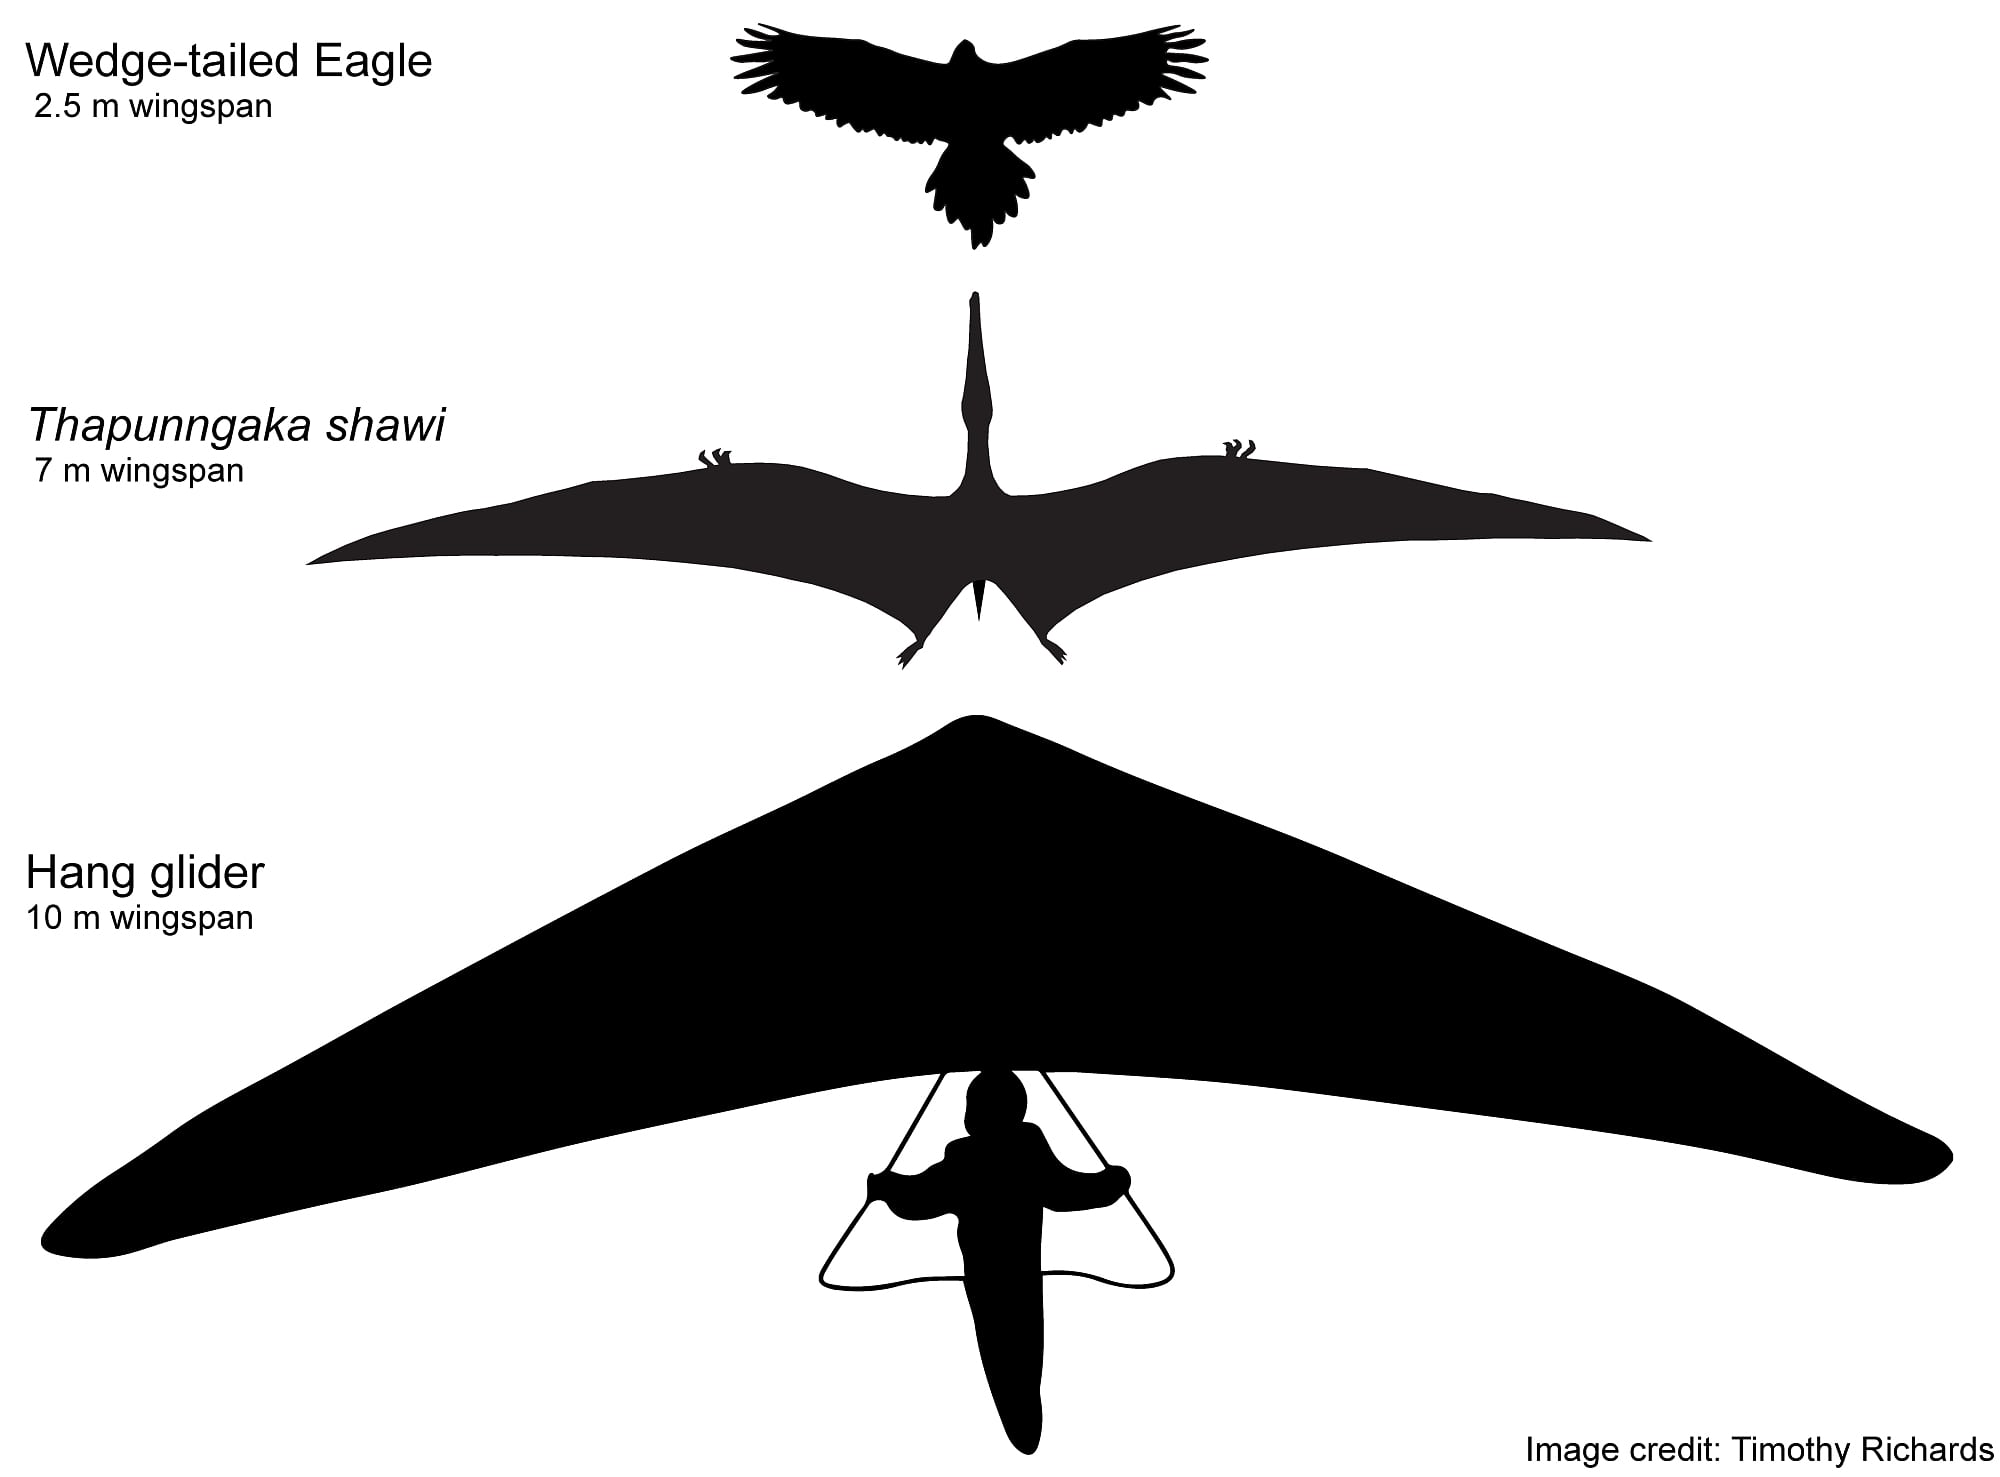 Los pterosaurios de siete metros de largo dominaron el espacio aéreo australiano: un espectro de la ciencia